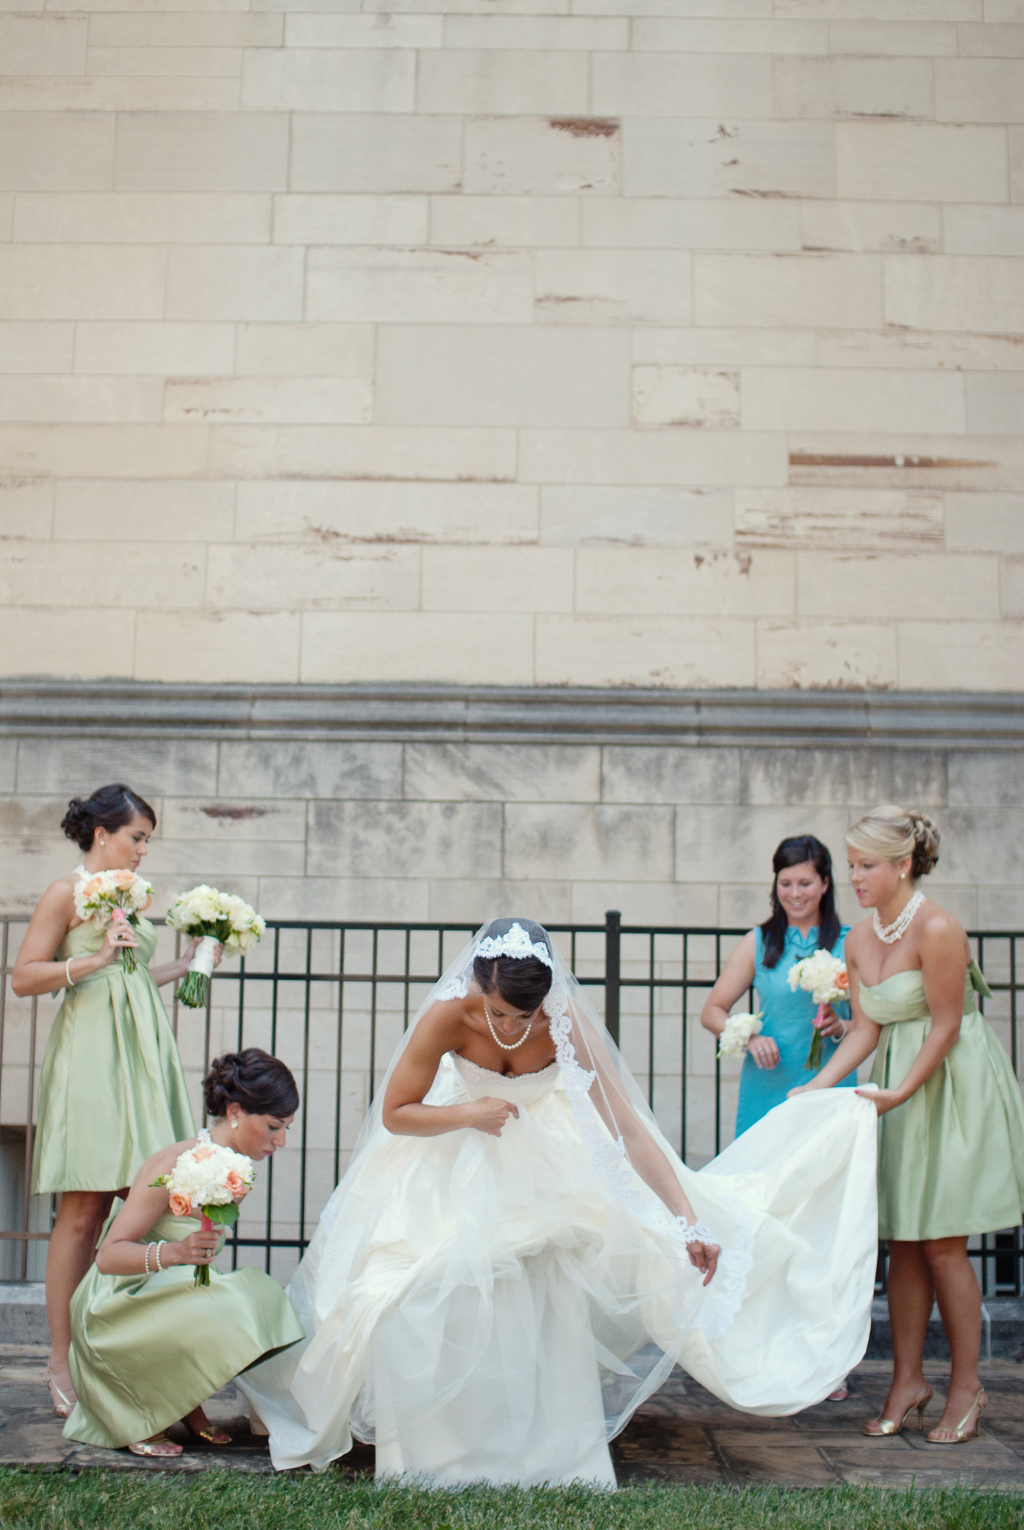 bridesmaids in green dresses help arrange bride's wedding dress